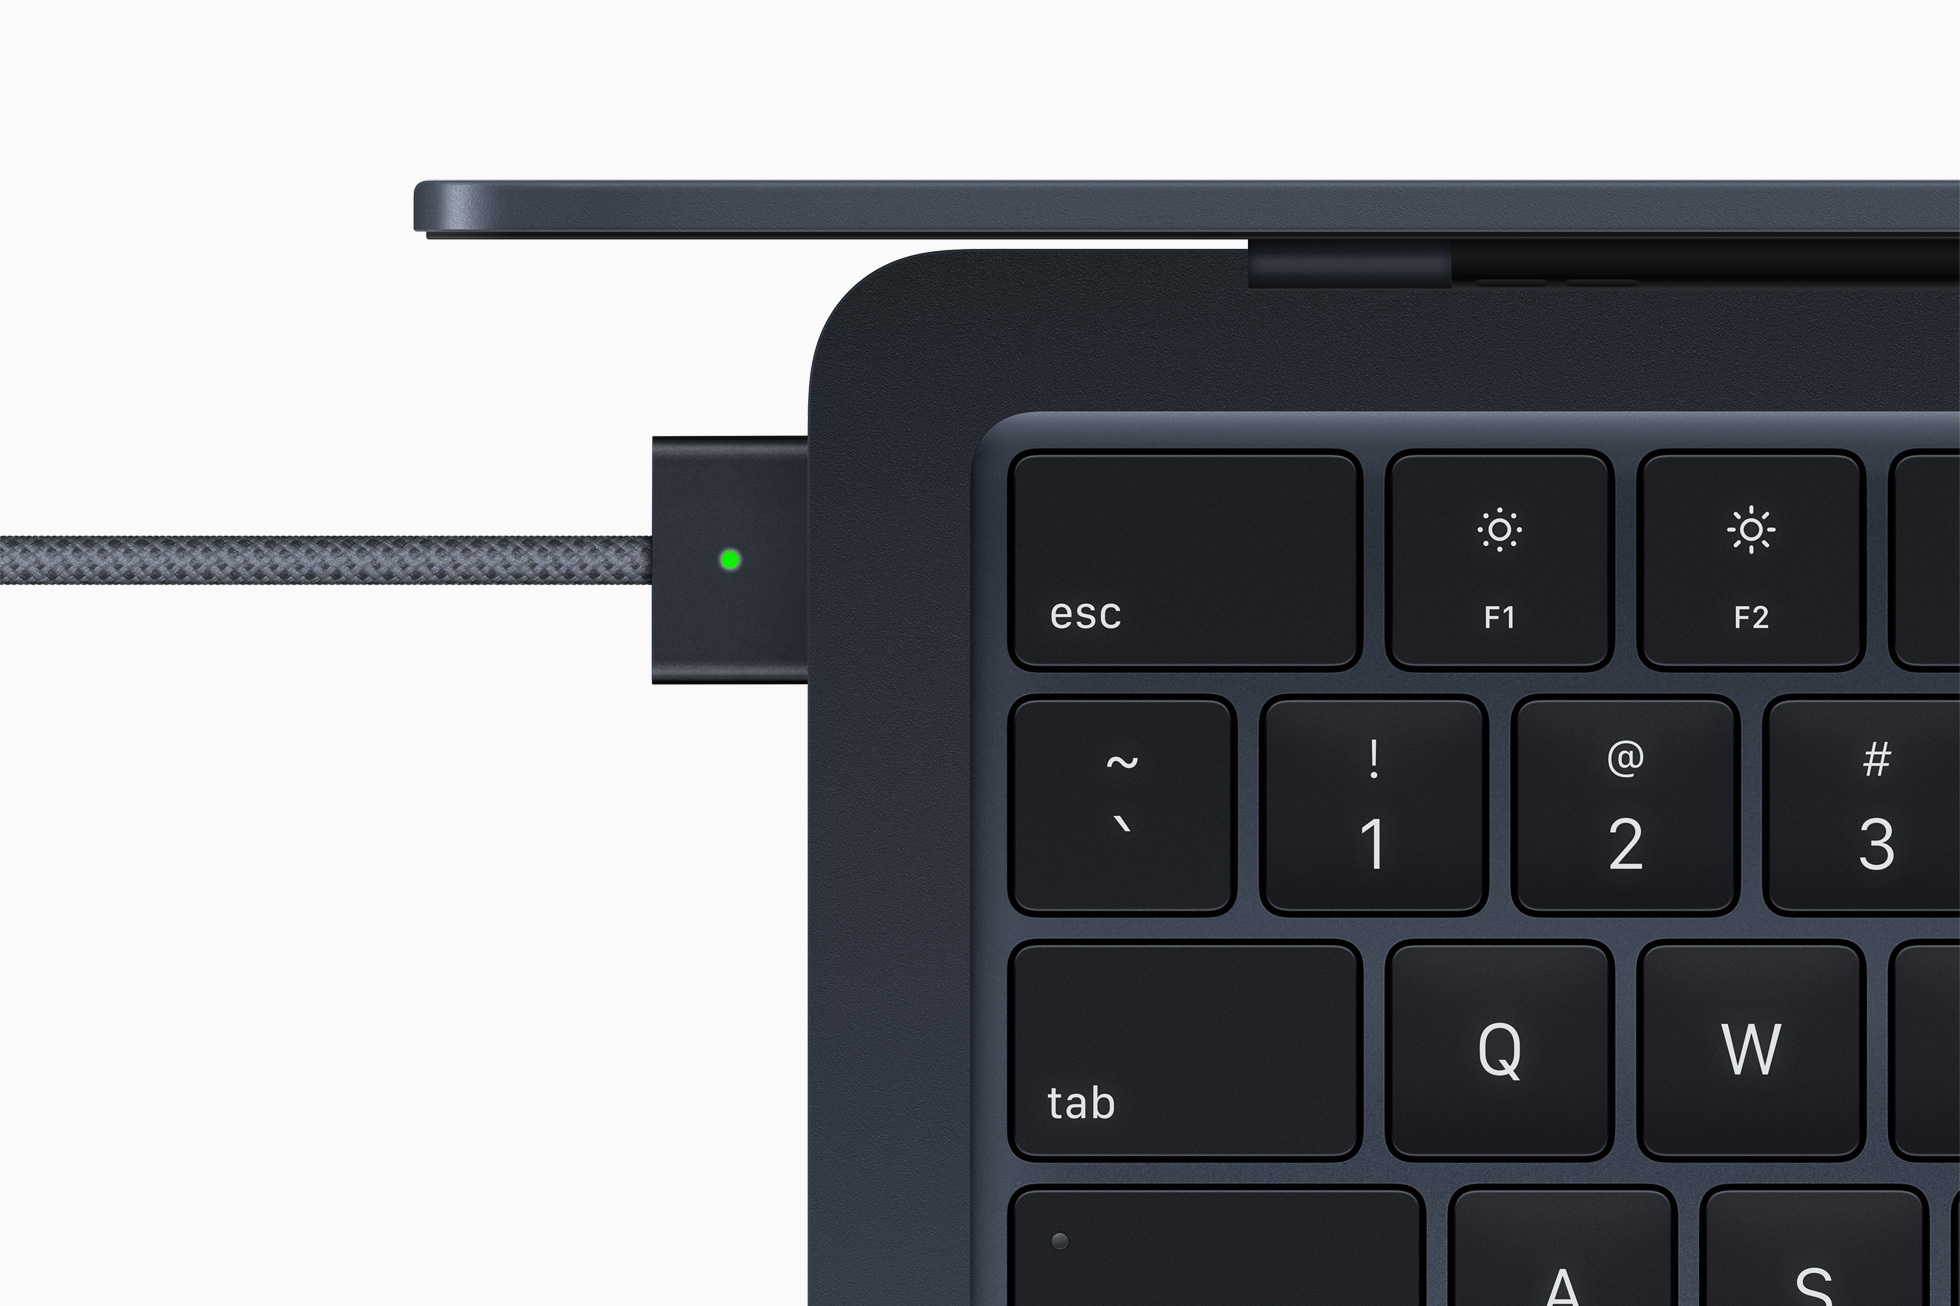 全新 MacBook Air 配備專門用於充電的 MagSafe，讓使用者插電時能安心使用。